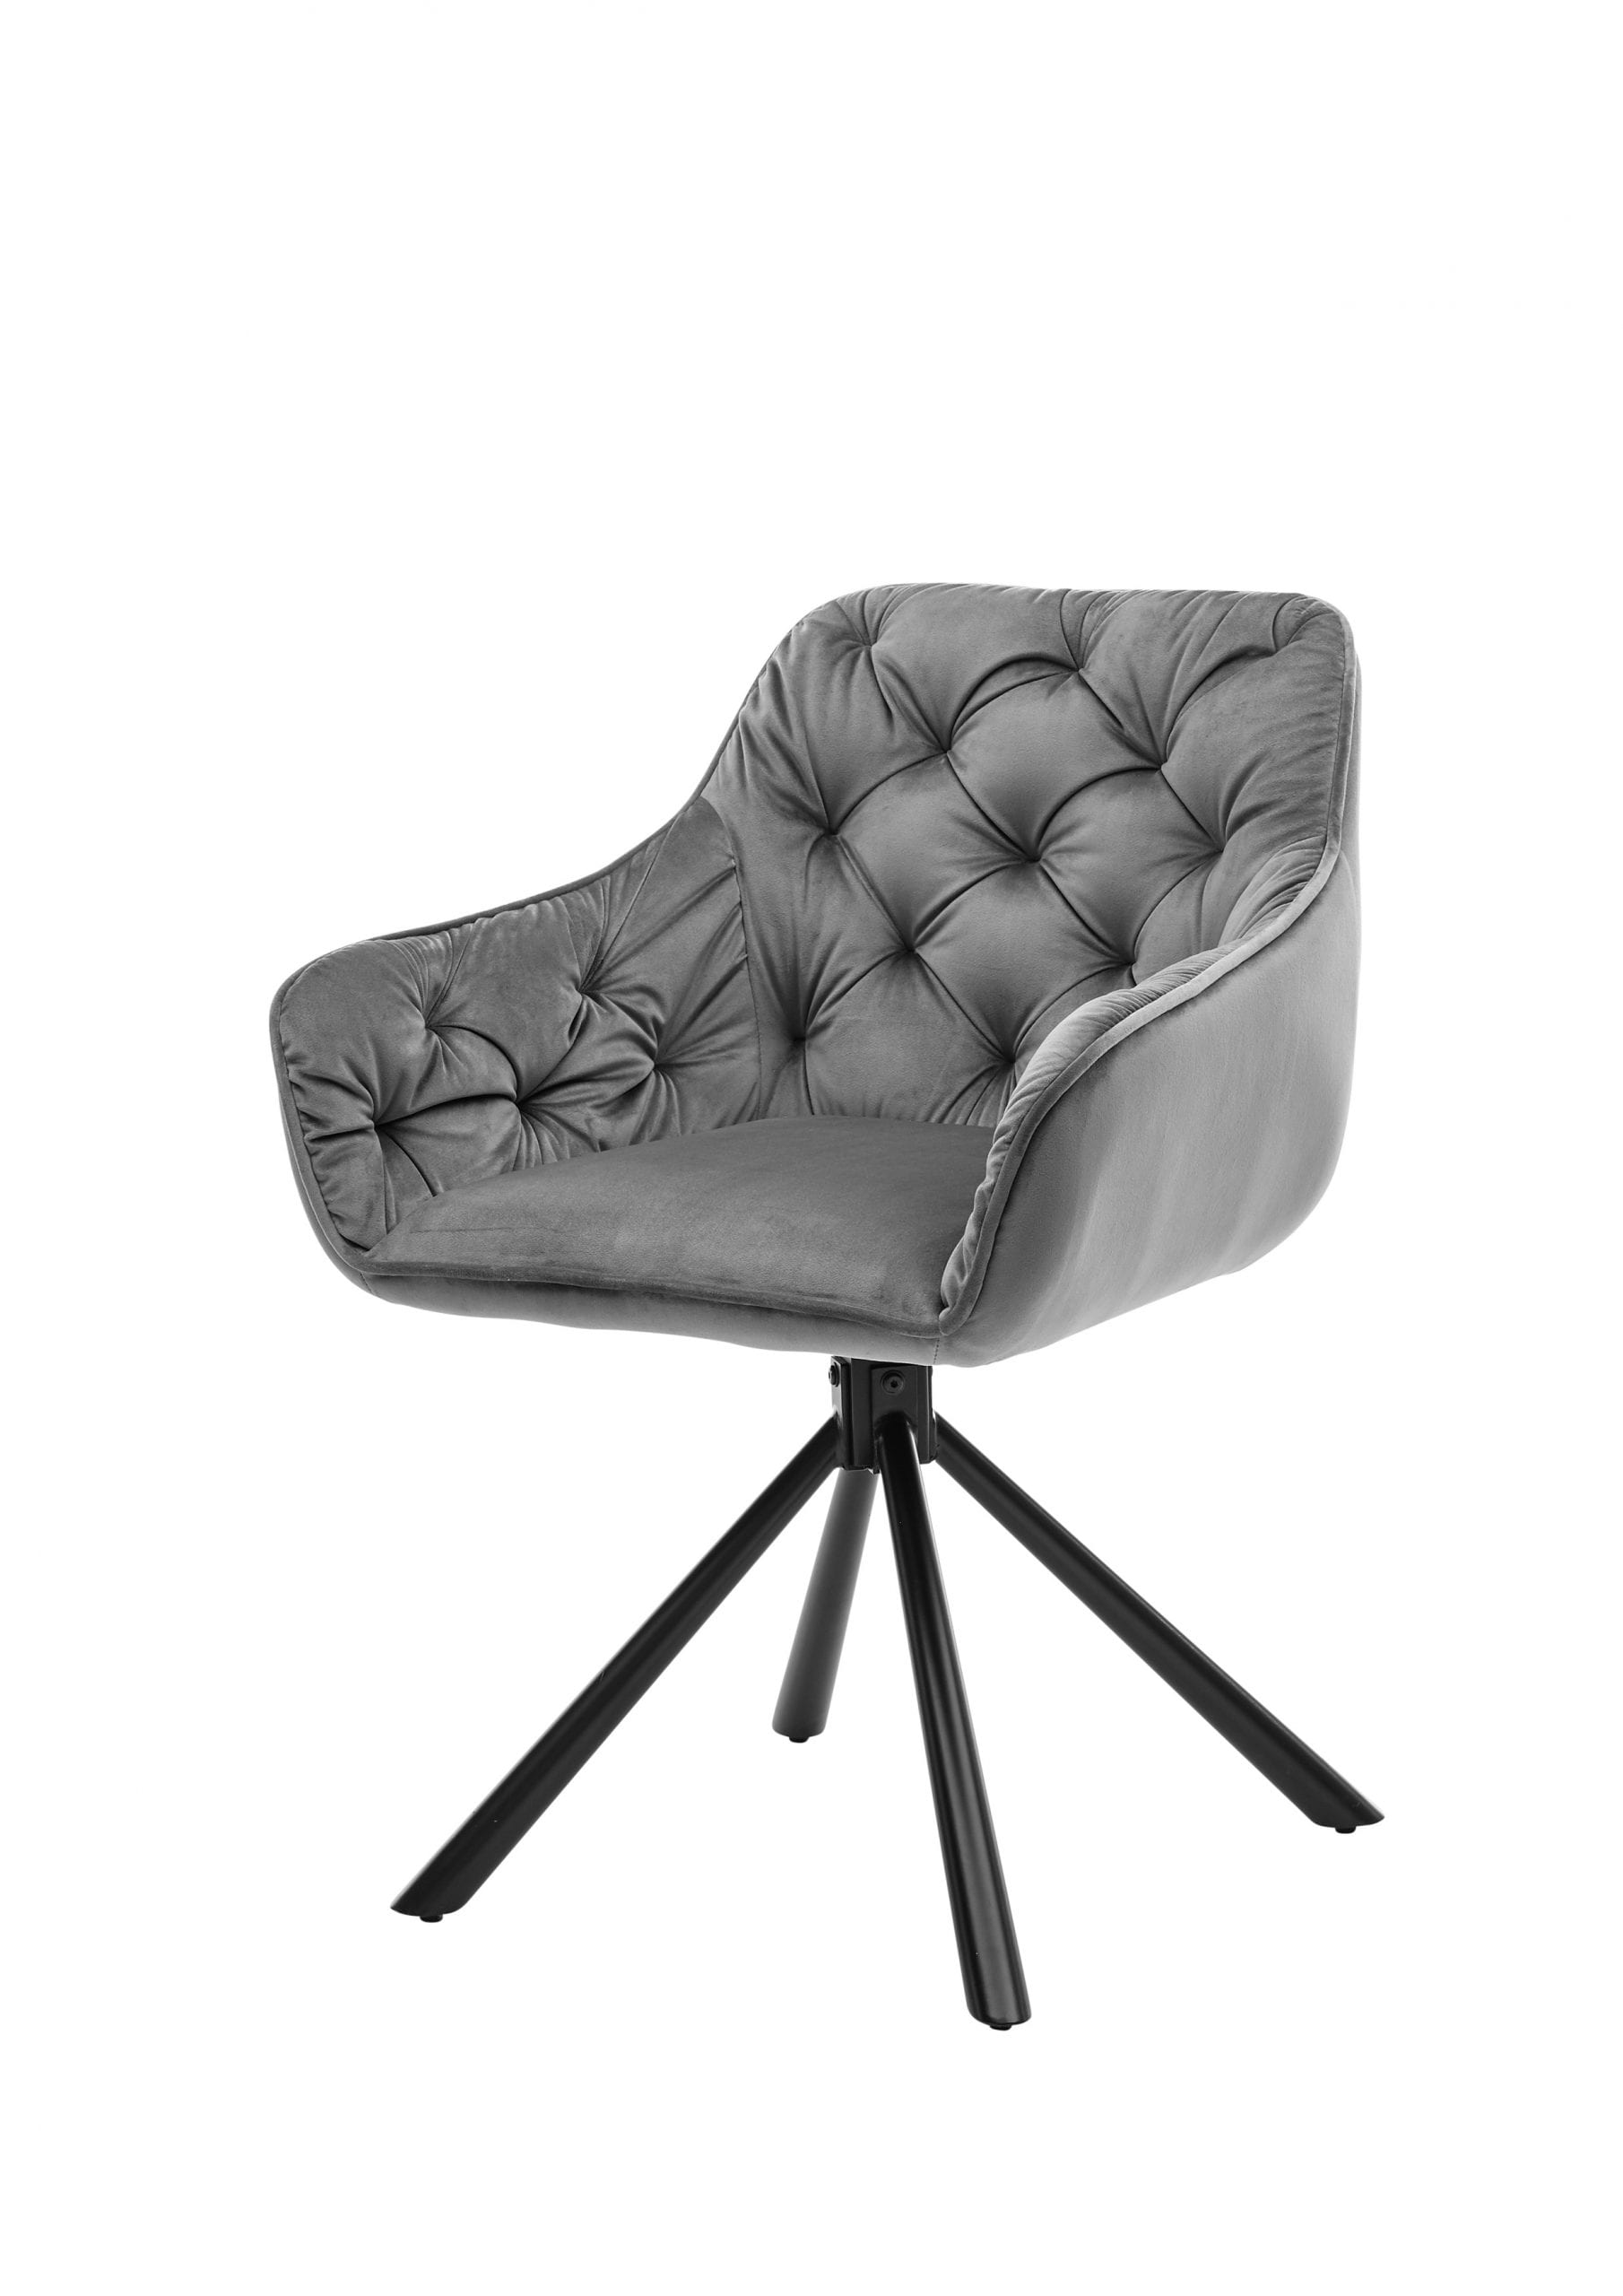 4er-Set Esszimmer Stühle / Armlehnstuhl mit Samtbezug in grau  inkl.Chesterfield-Steppung auf Rücken und Lehnen innen,180° drehbar inkl.  Rückholfunktion « Möbis and More